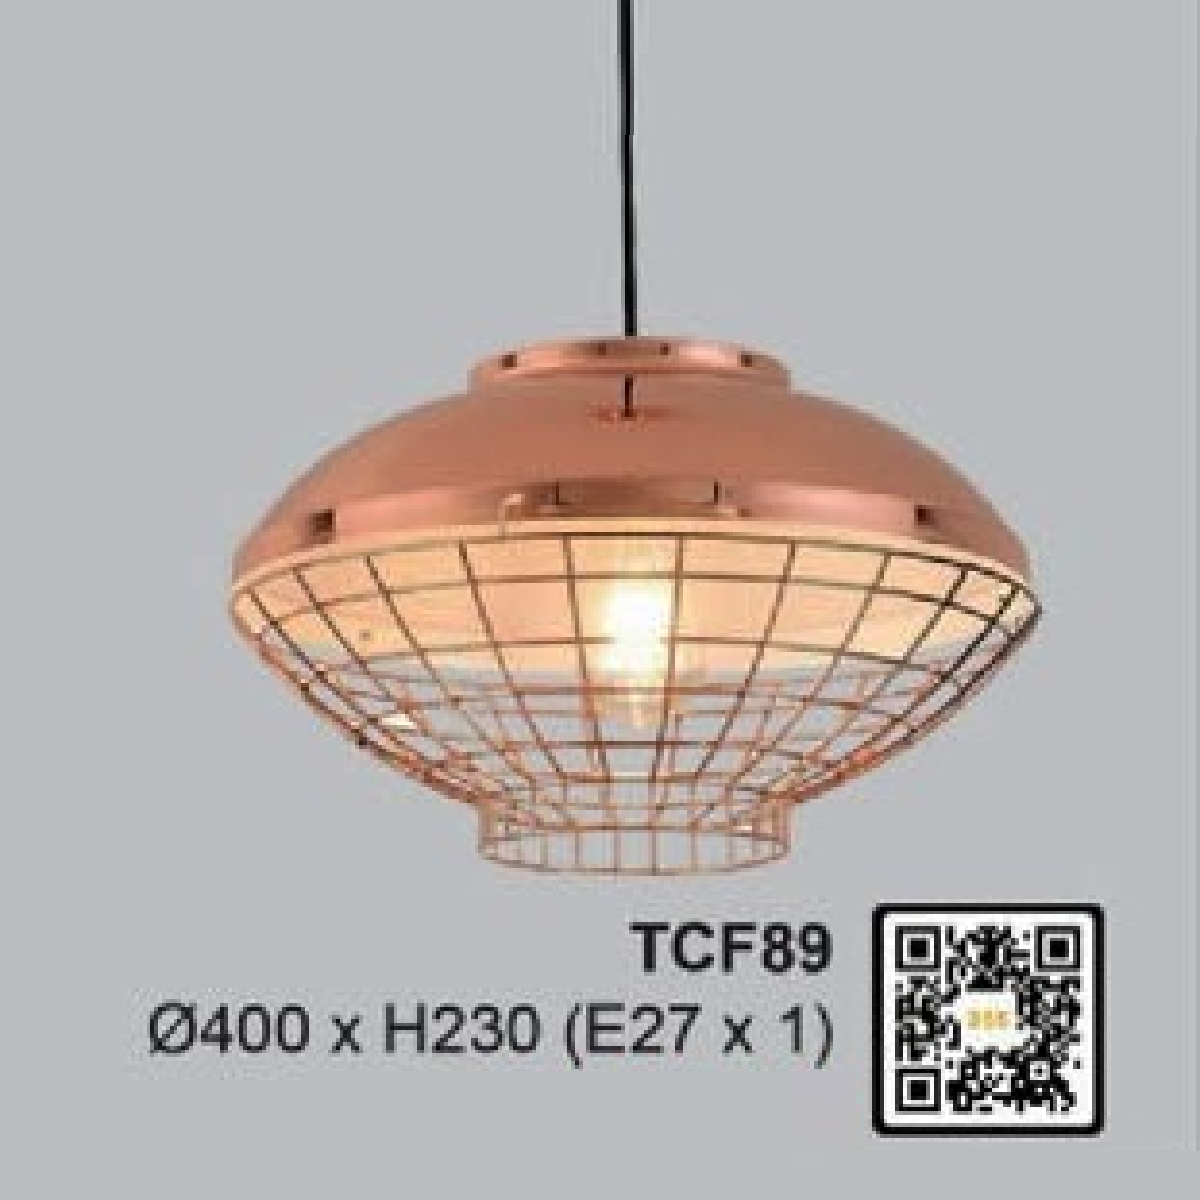 35 - TCF89: Đèn thả đơn - KT: Ø400mm x H230mm - Đèn E27 x 1 bóng